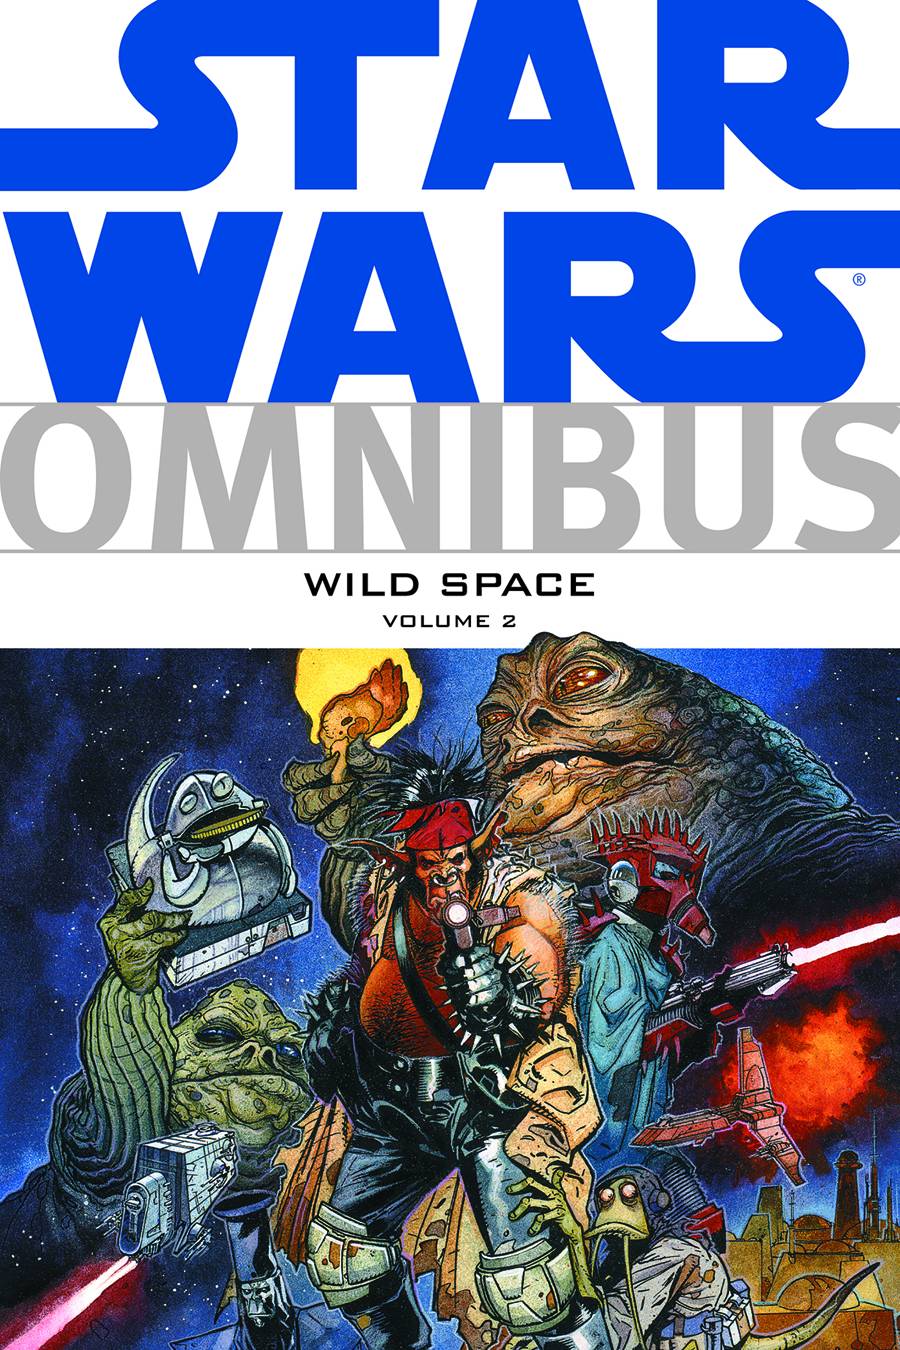 Star Wars Omnibus Wild Space Graphic Novel Volume 2